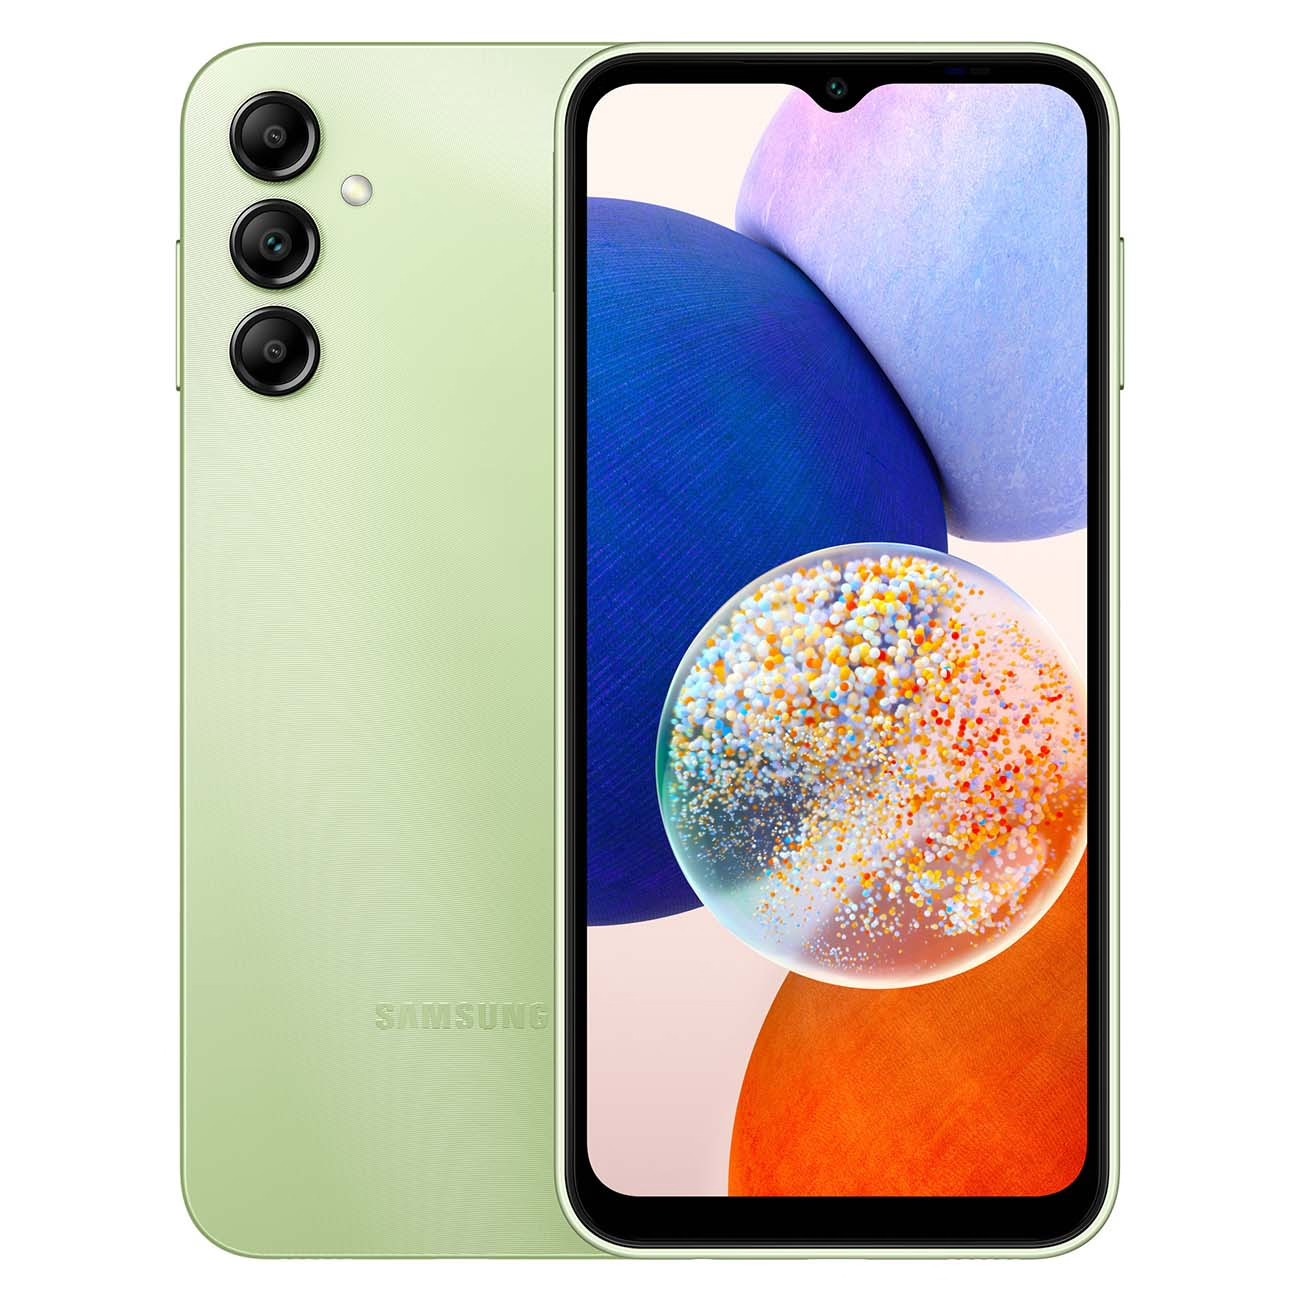 Купить смартфон samsung galaxy a14 4/64gb light green A-Серия в официальном магазине Apple, Samsung, Xiaomi. iPixel.ru Купить, заказ, кредит, рассрочка, отзывы,  характеристики, цена,  фотографии, в подарок.